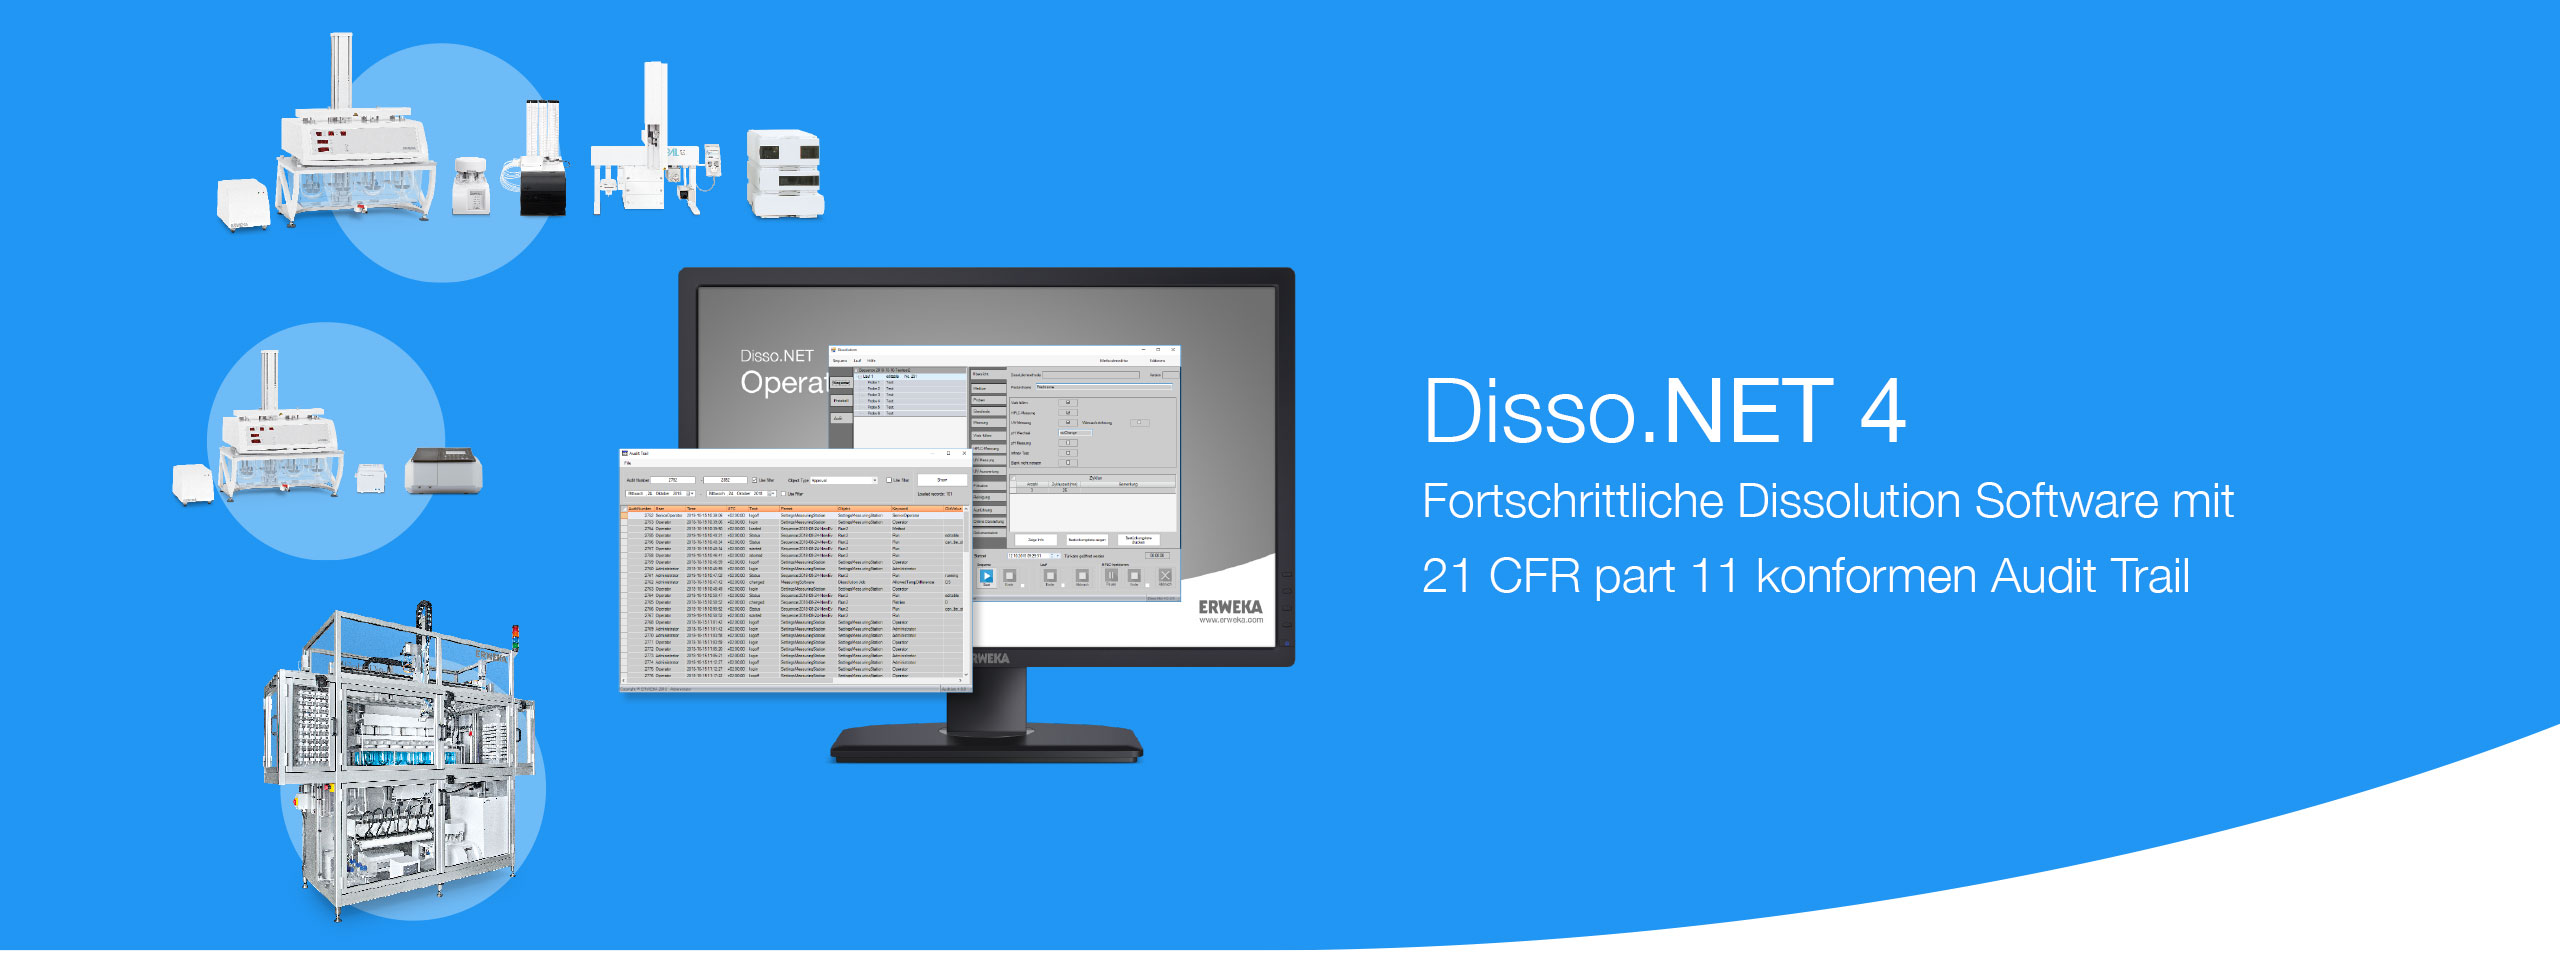 Disso.NET 4 Header